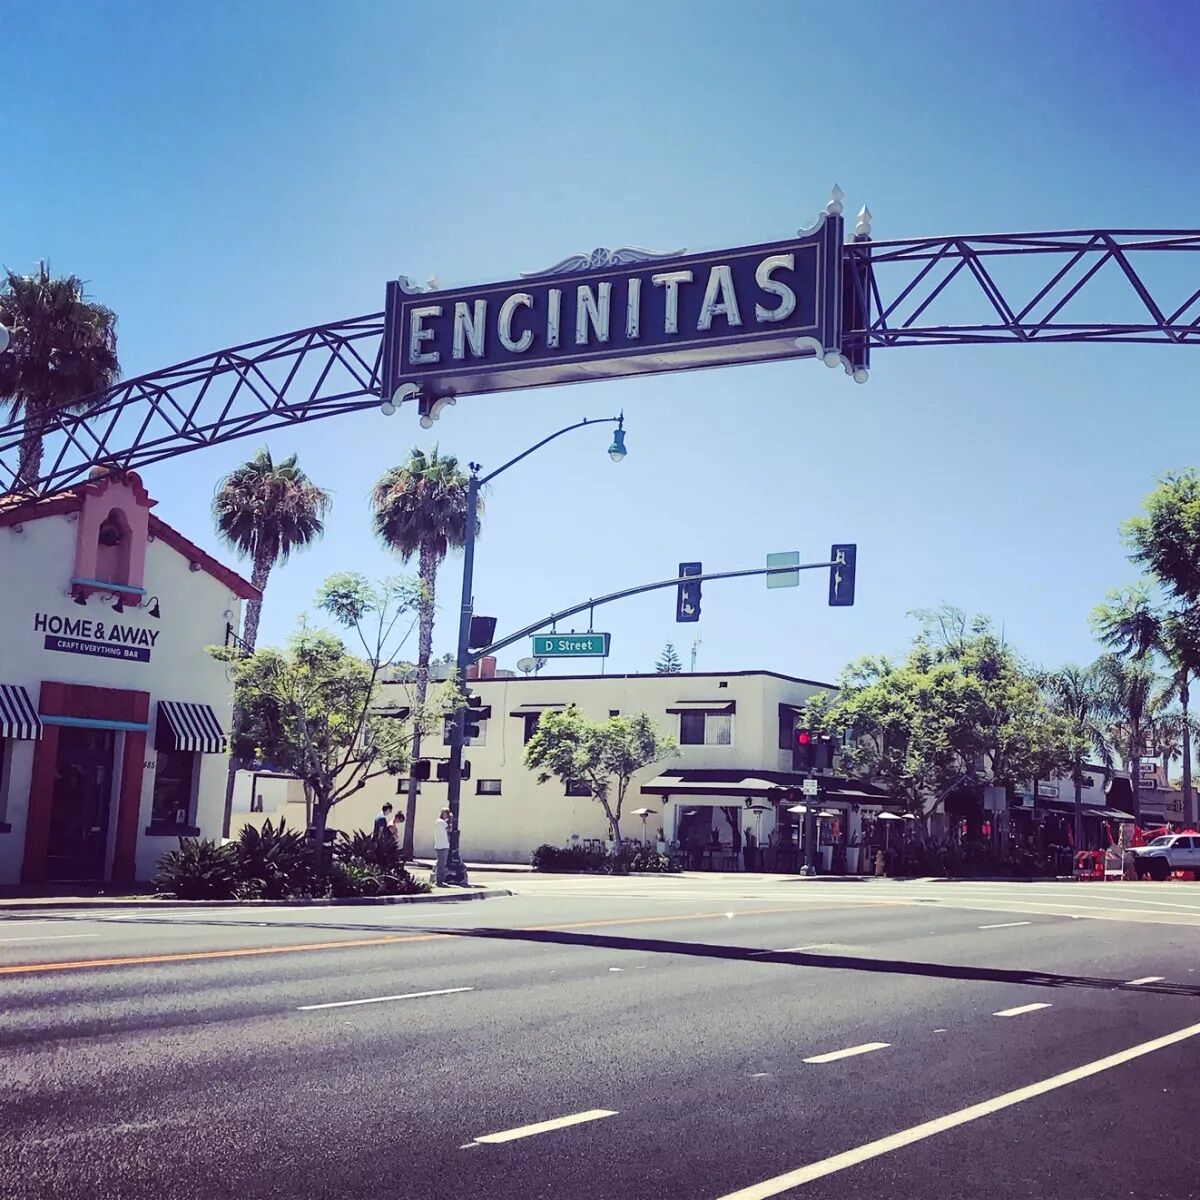 The Encinitas banner